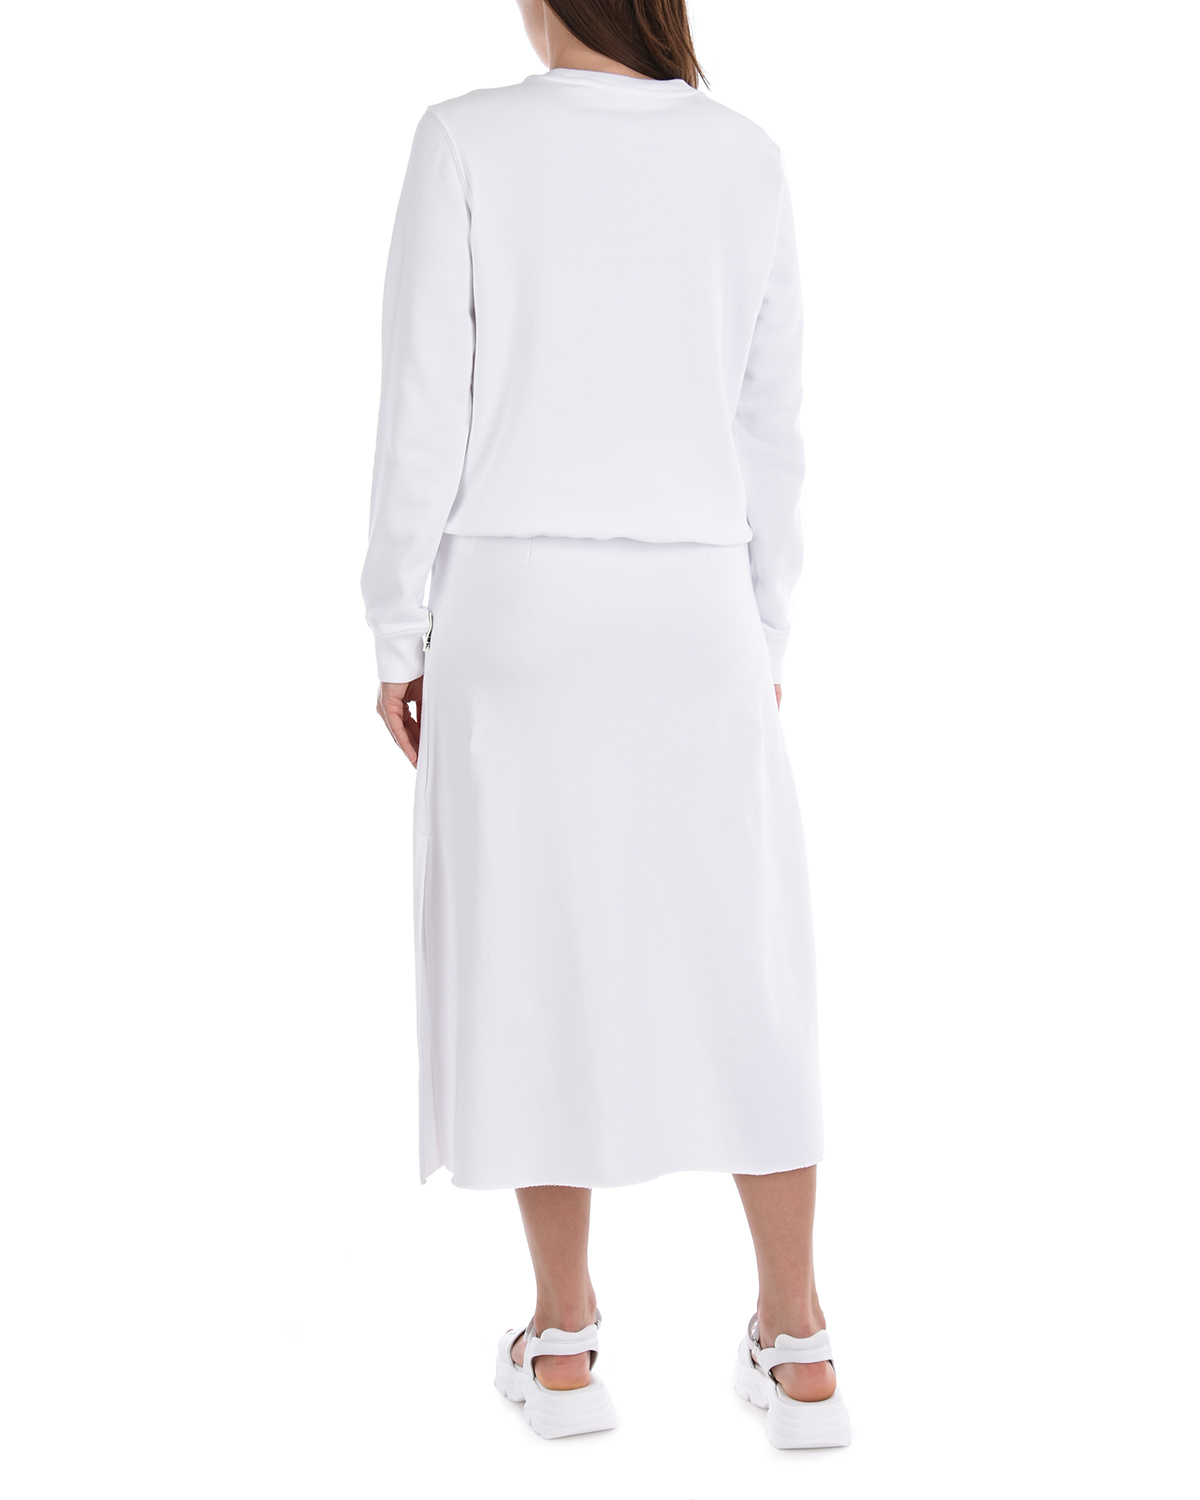 Белая юбка в спортивном стиле 5 Preview, размер 40, цвет белый - фото 3